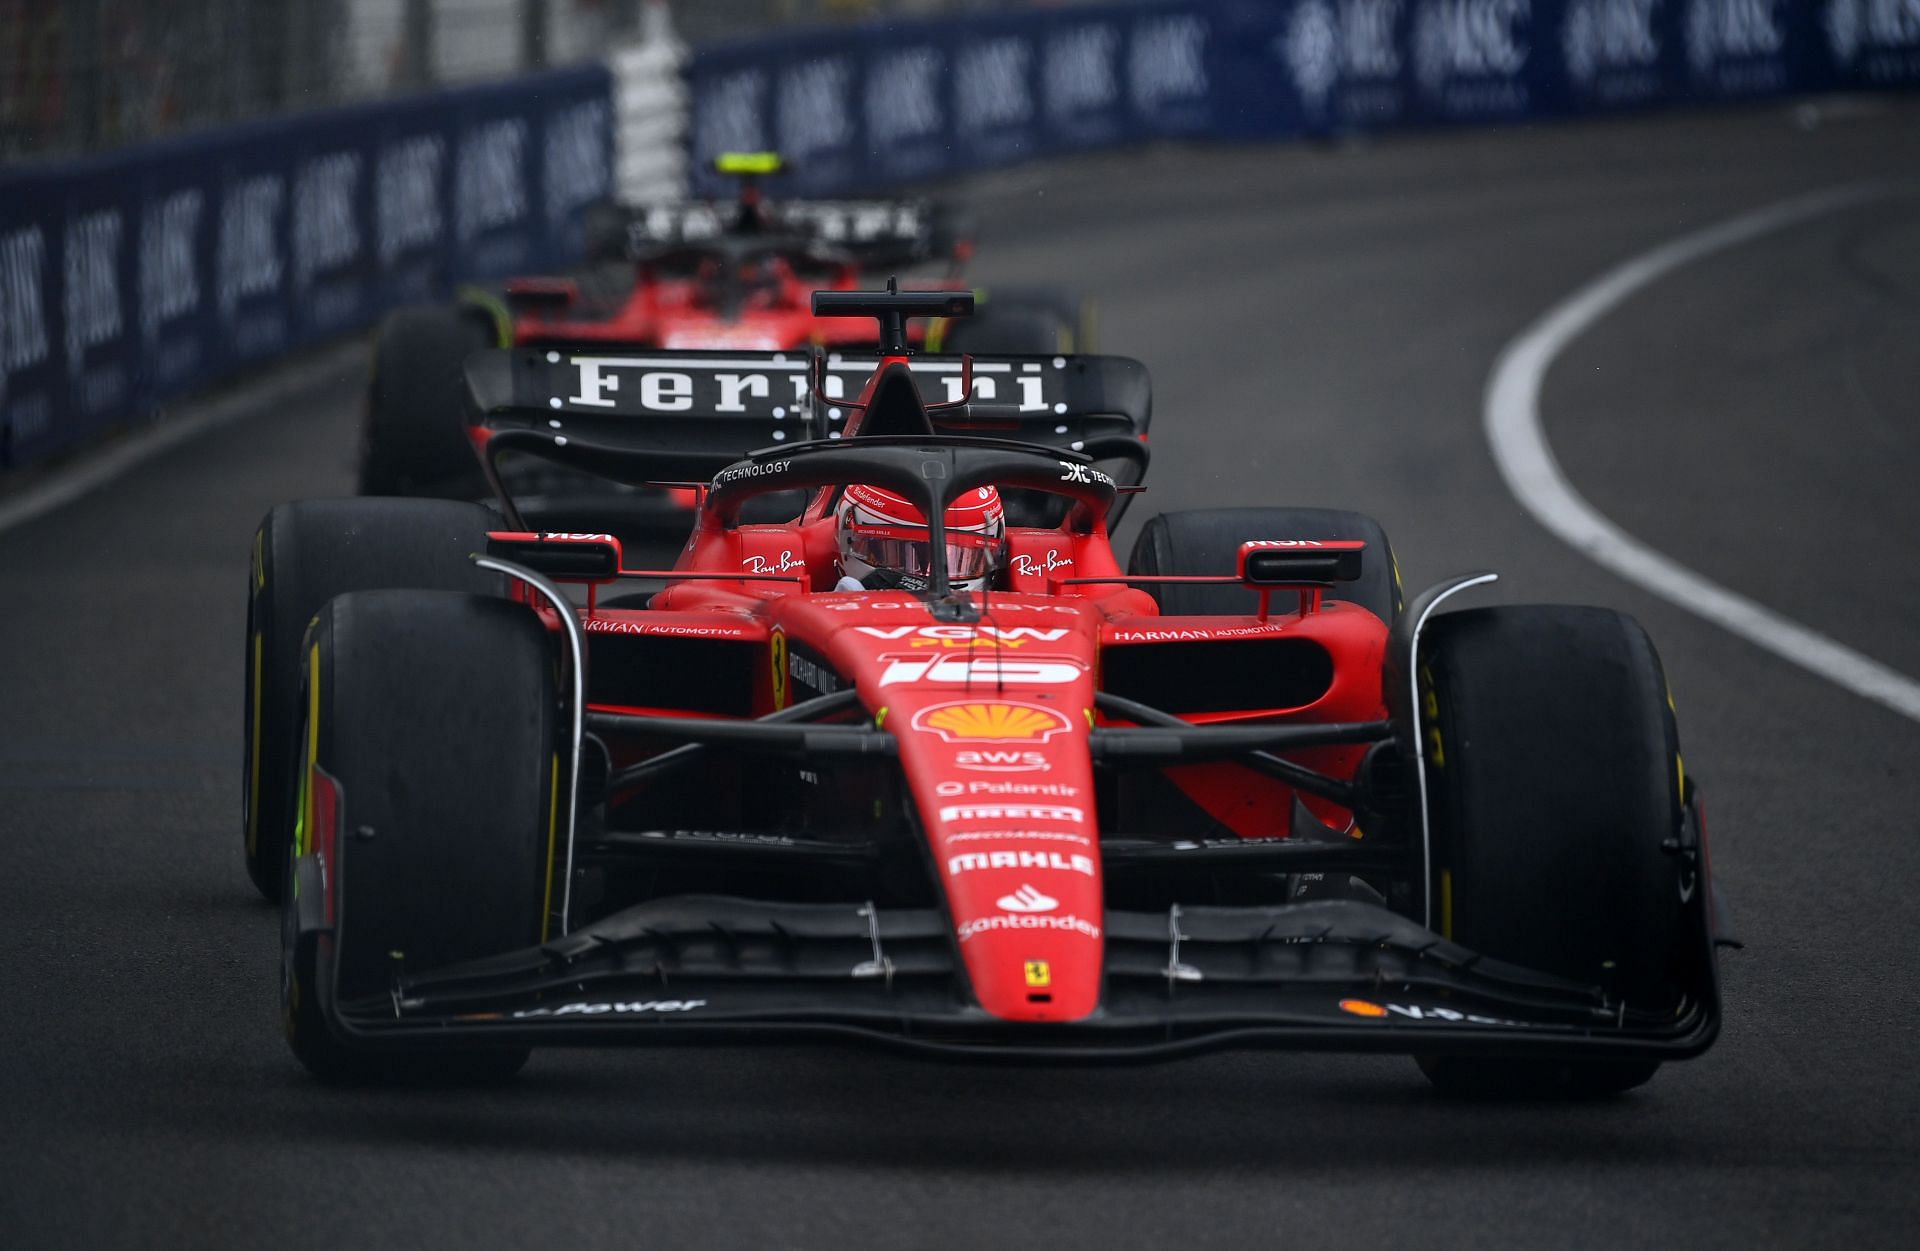 Scuderia: What does Scuderia mean in the Ferrari F1 team’s name?